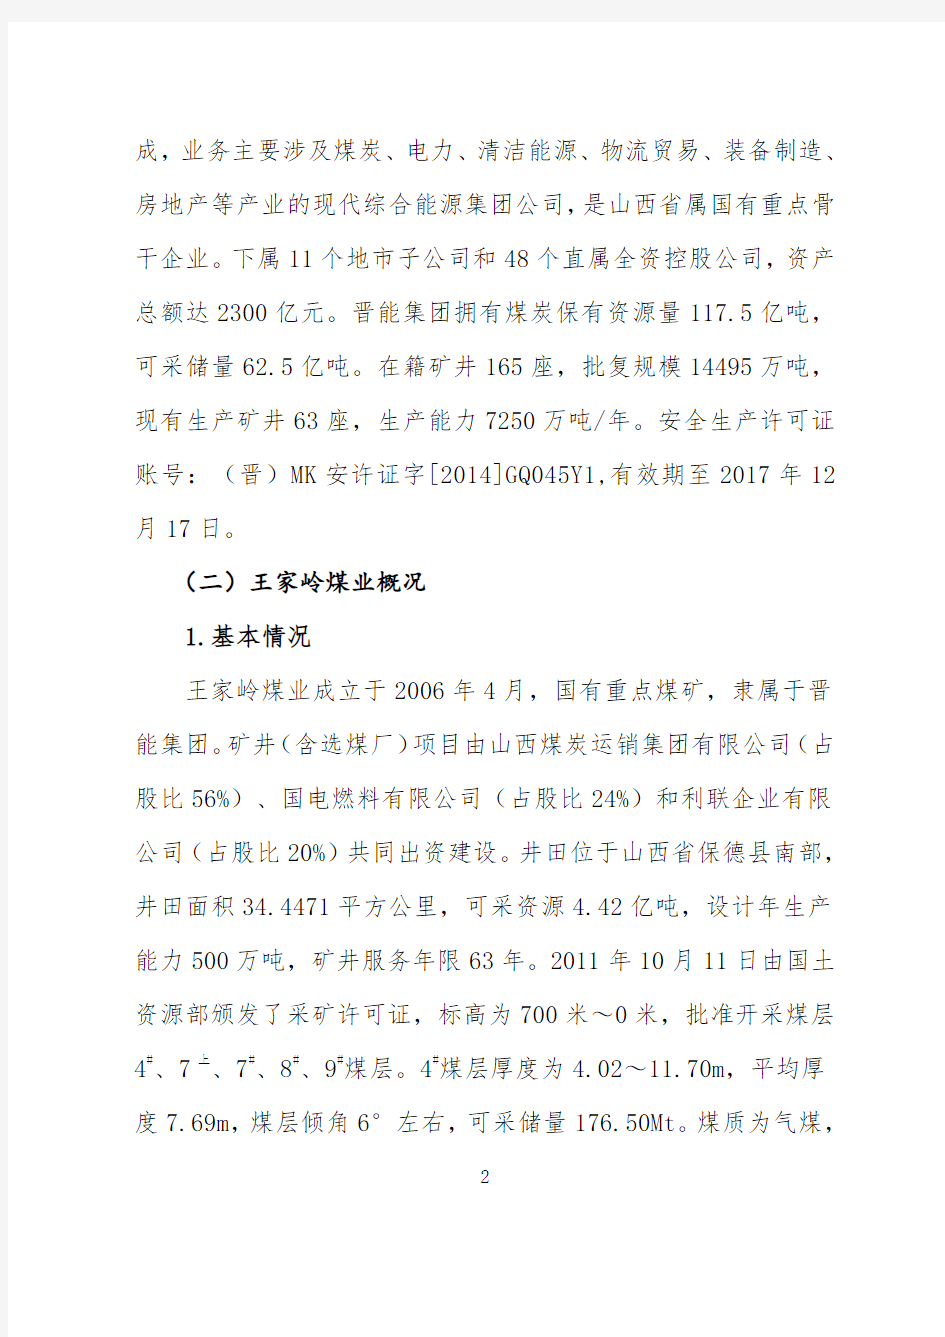 晋能集团王家岭煤矿2016年“12·4”一般机电事故报告